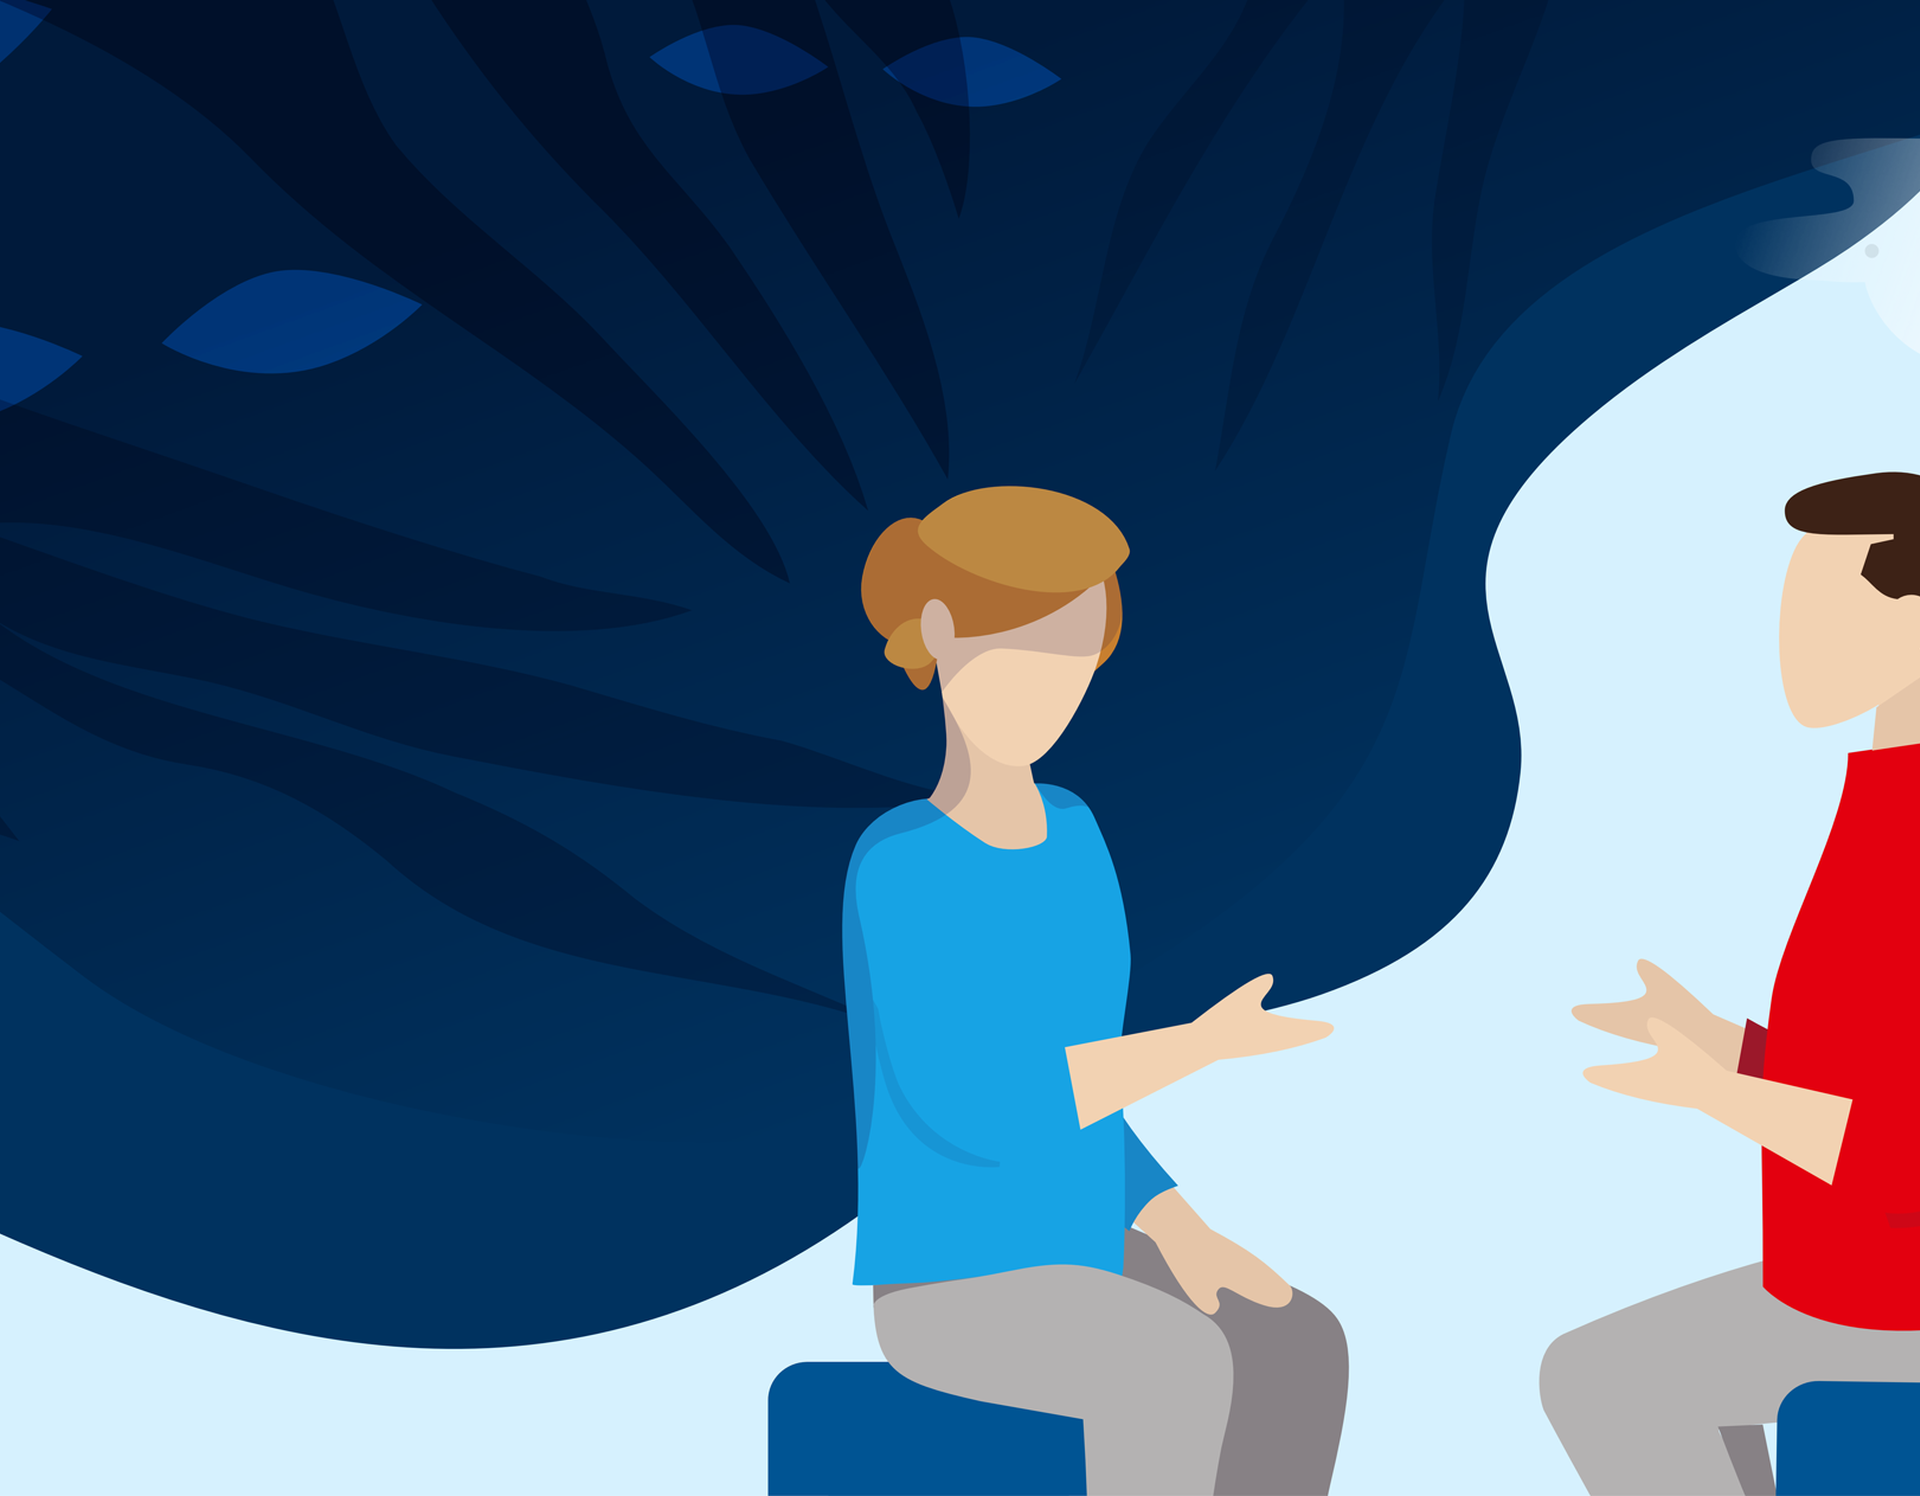 Illustration einer Frau, die mit einem Mann spricht. Im Hintergrund erscheint eine blaue wolkenartige Form.